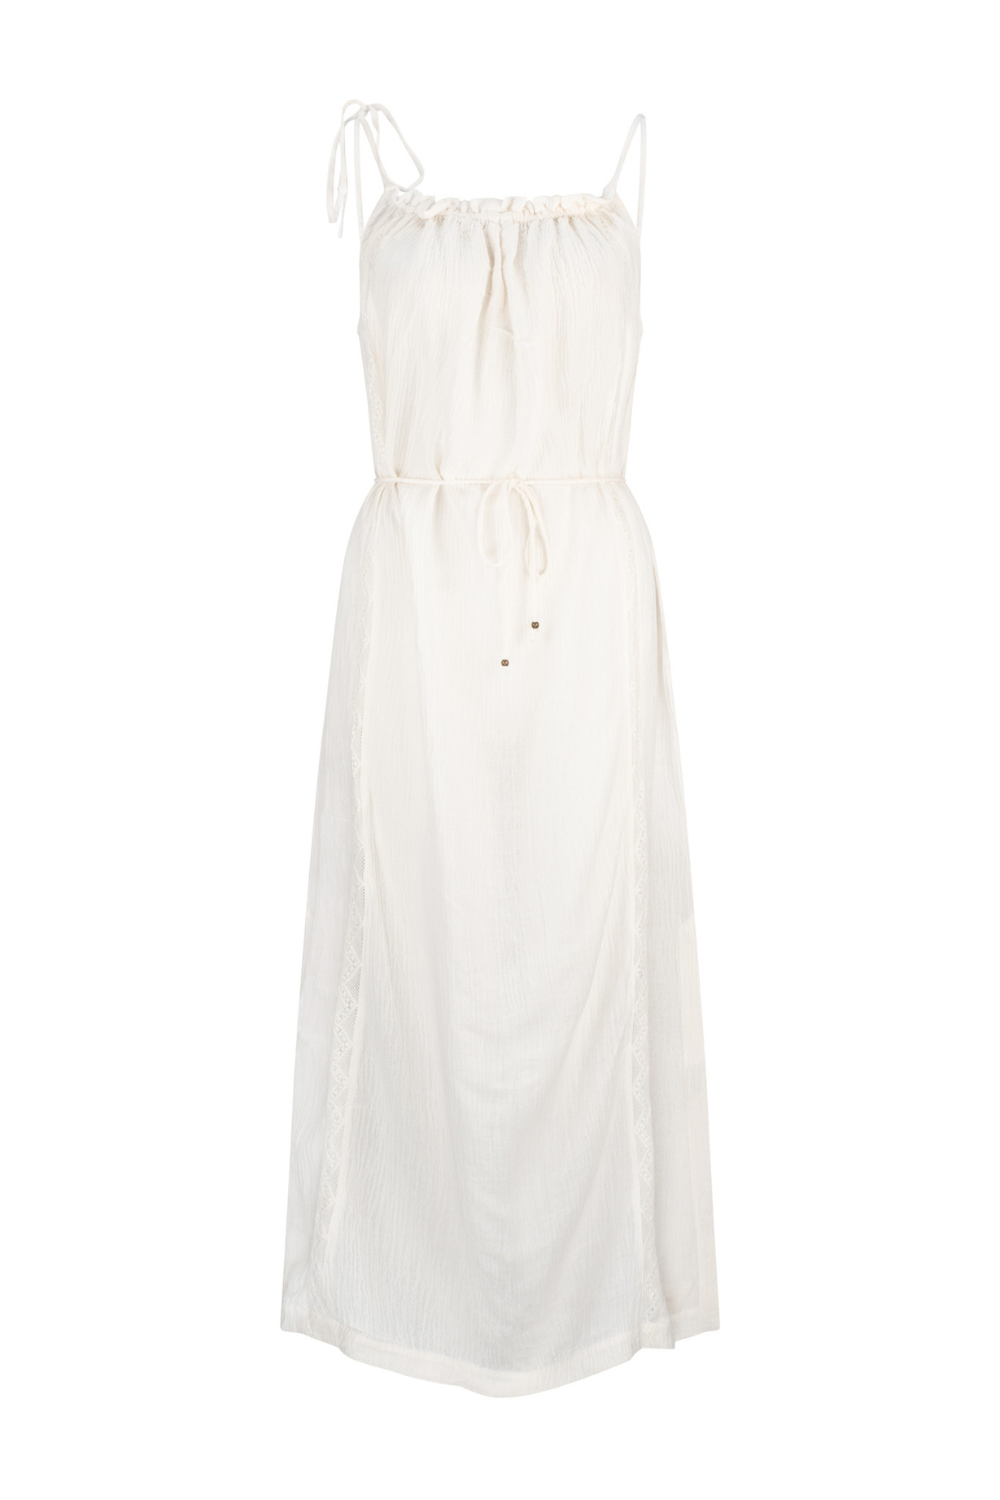 Hydra Wren Dress - Antique White